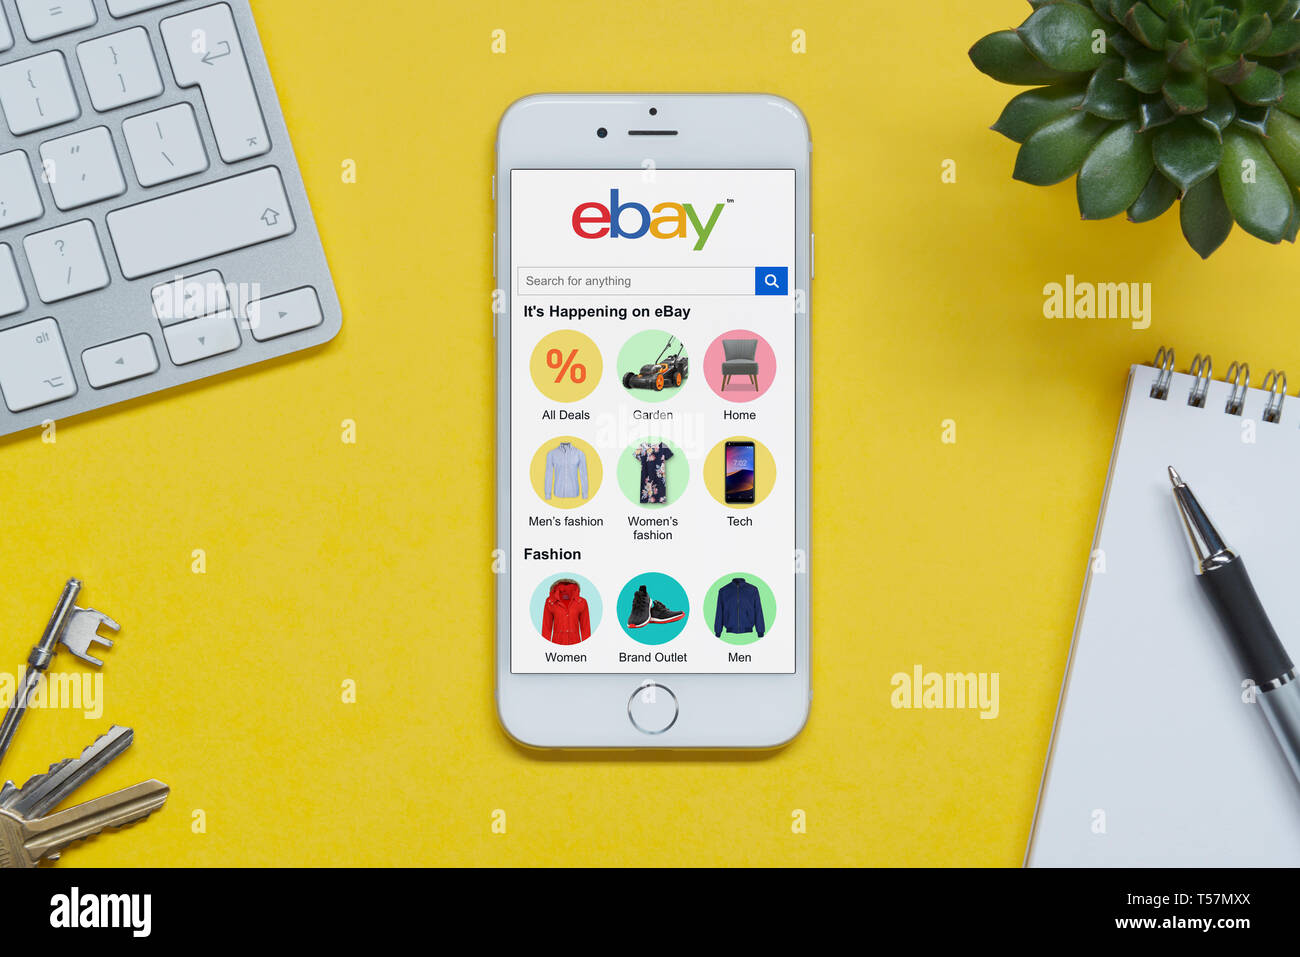 Un iPhone montrant le site web d'ebay repose sur un fond jaune table avec un clavier, les touches, le bloc-notes et des plantes (usage éditorial uniquement). Banque D'Images